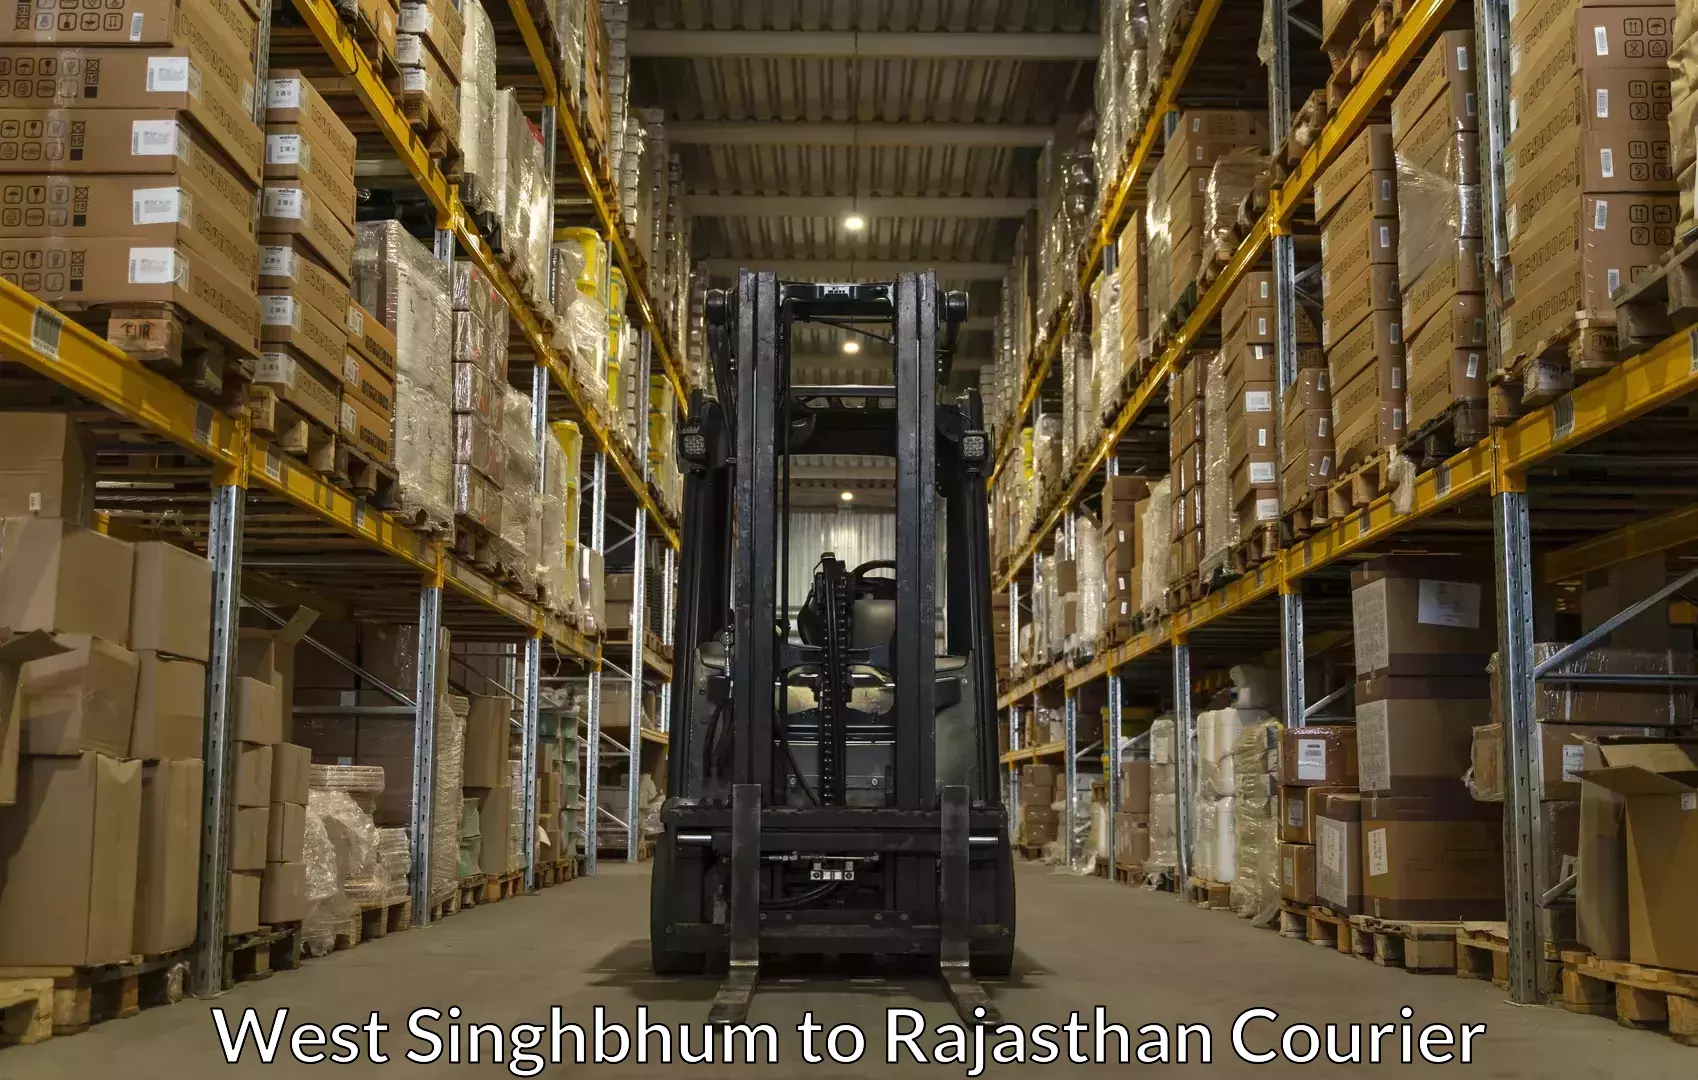 Baggage shipping logistics West Singhbhum to Bhilwara